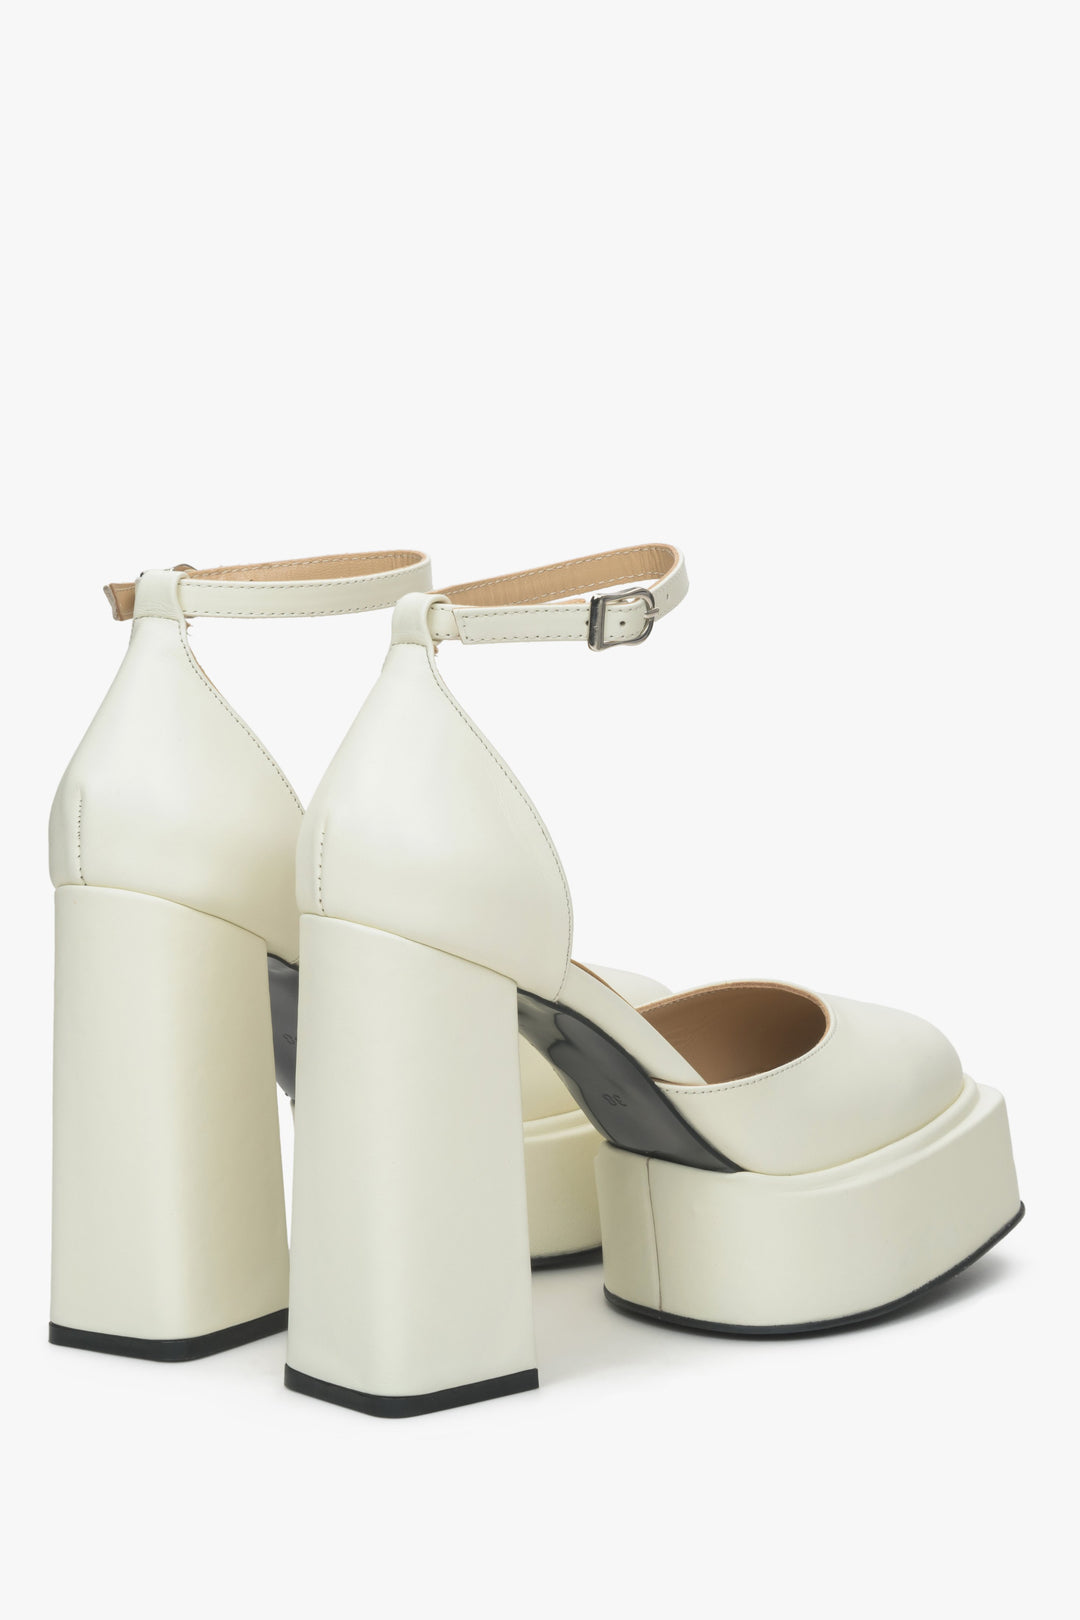 Sandały damskie mleczno-beżowe ze skóry naturalnej Estro na słupku i platformie - prezentacja zapiętka butów i obcasa.